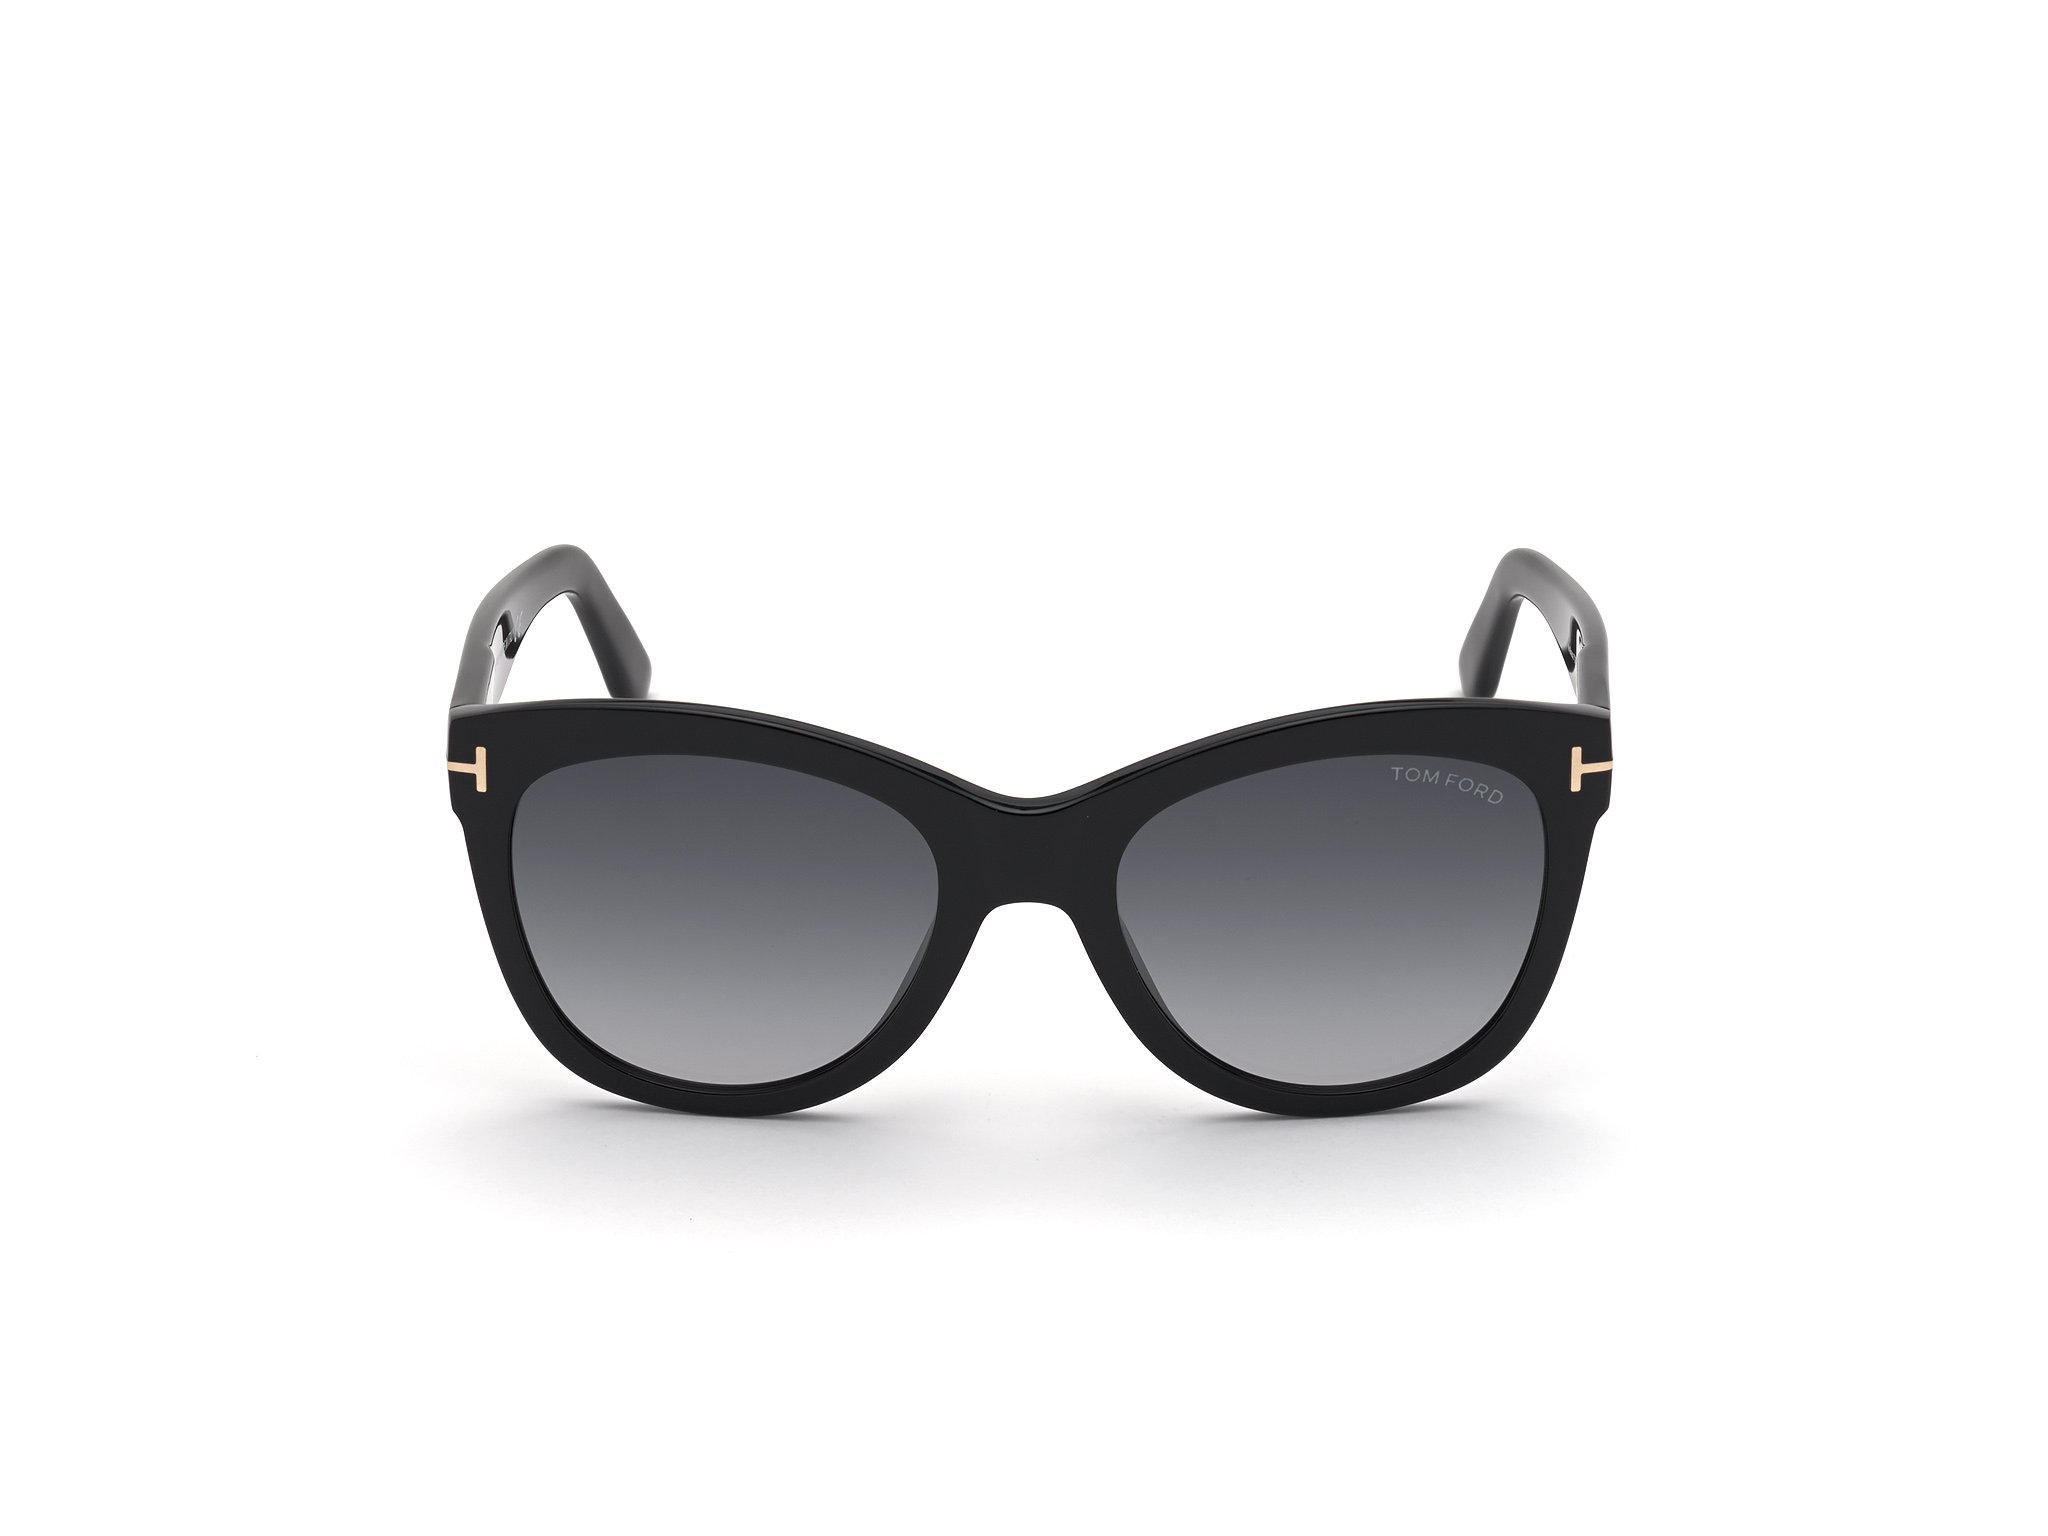 Das Bild zeigt die Sonnenbrille Wallace FT0870 von der Marke Tom Ford in schwarz frontal